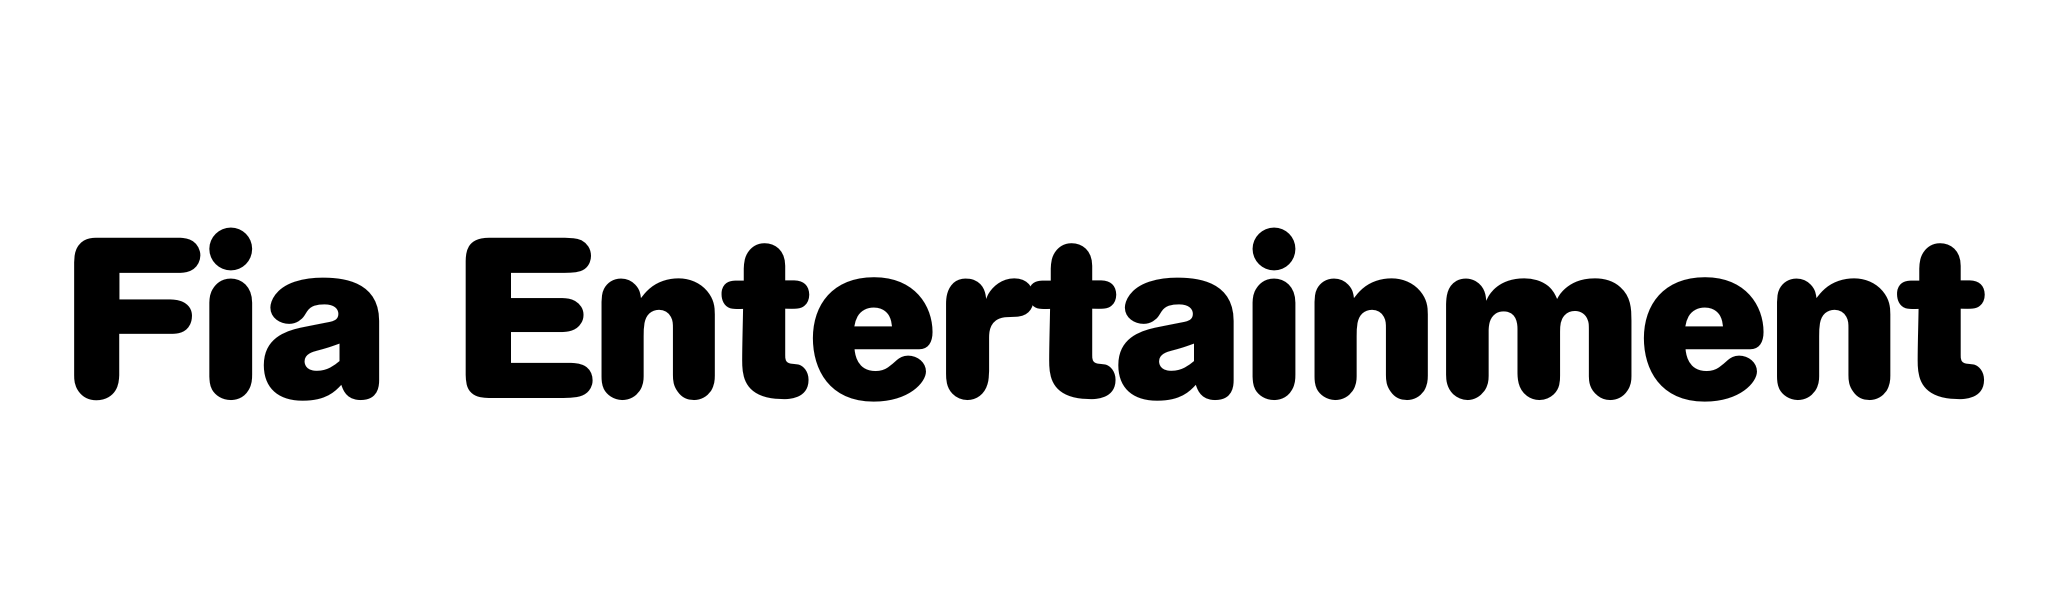 Fia Entertainment (Silver)